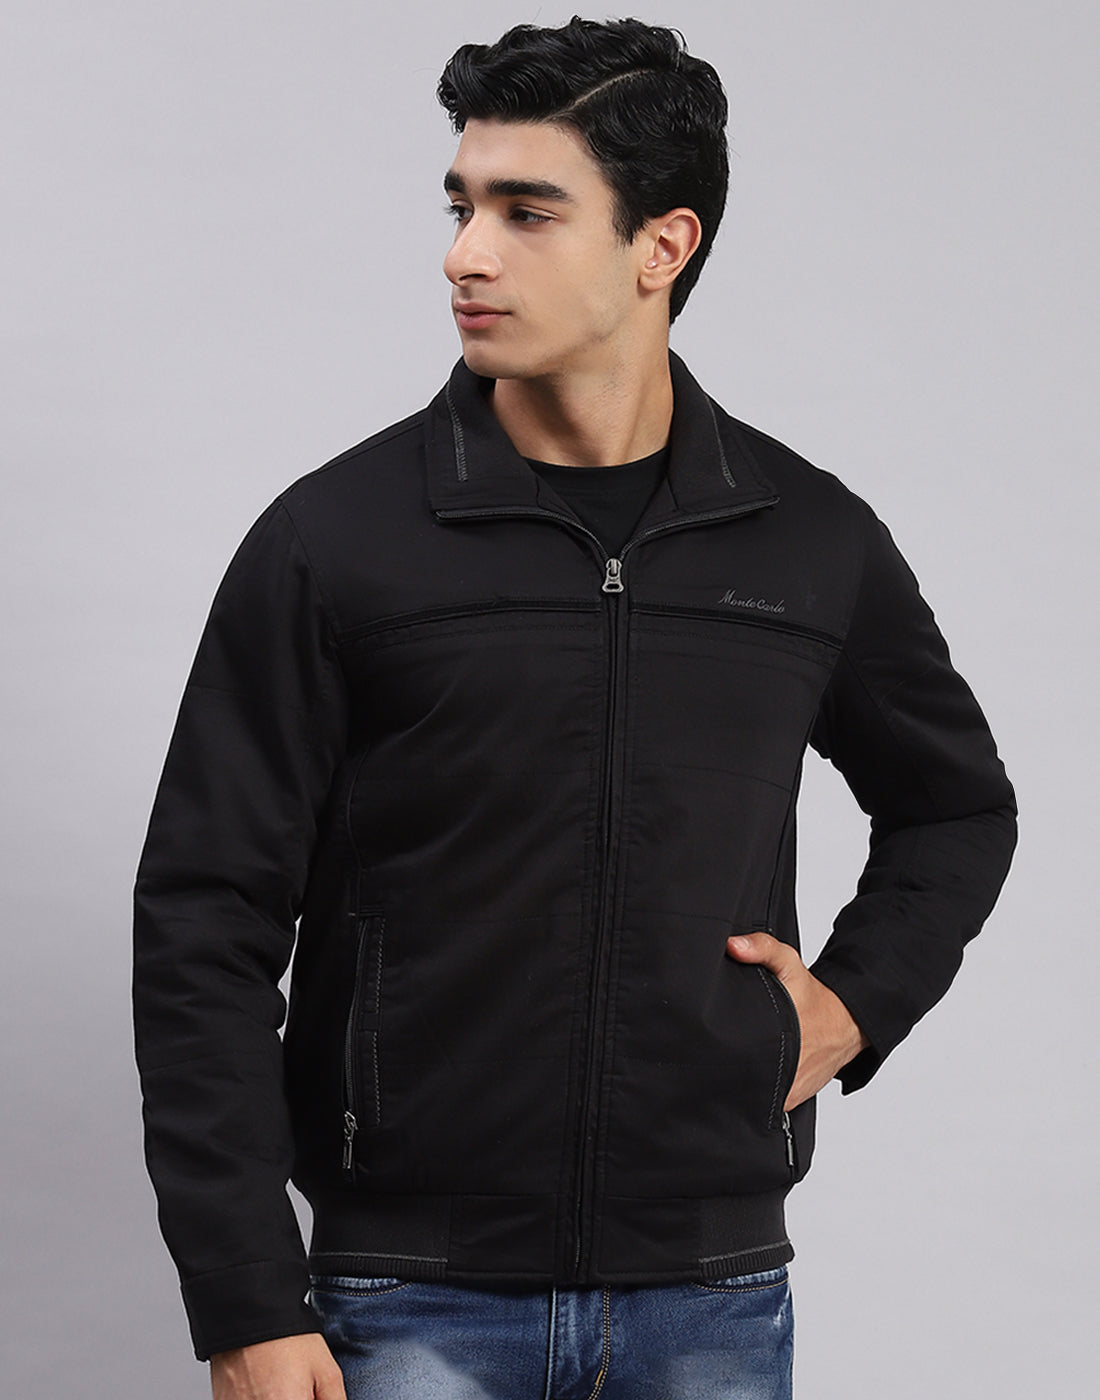 Men Black Solid Spread Collar Full Sleeve Jackets